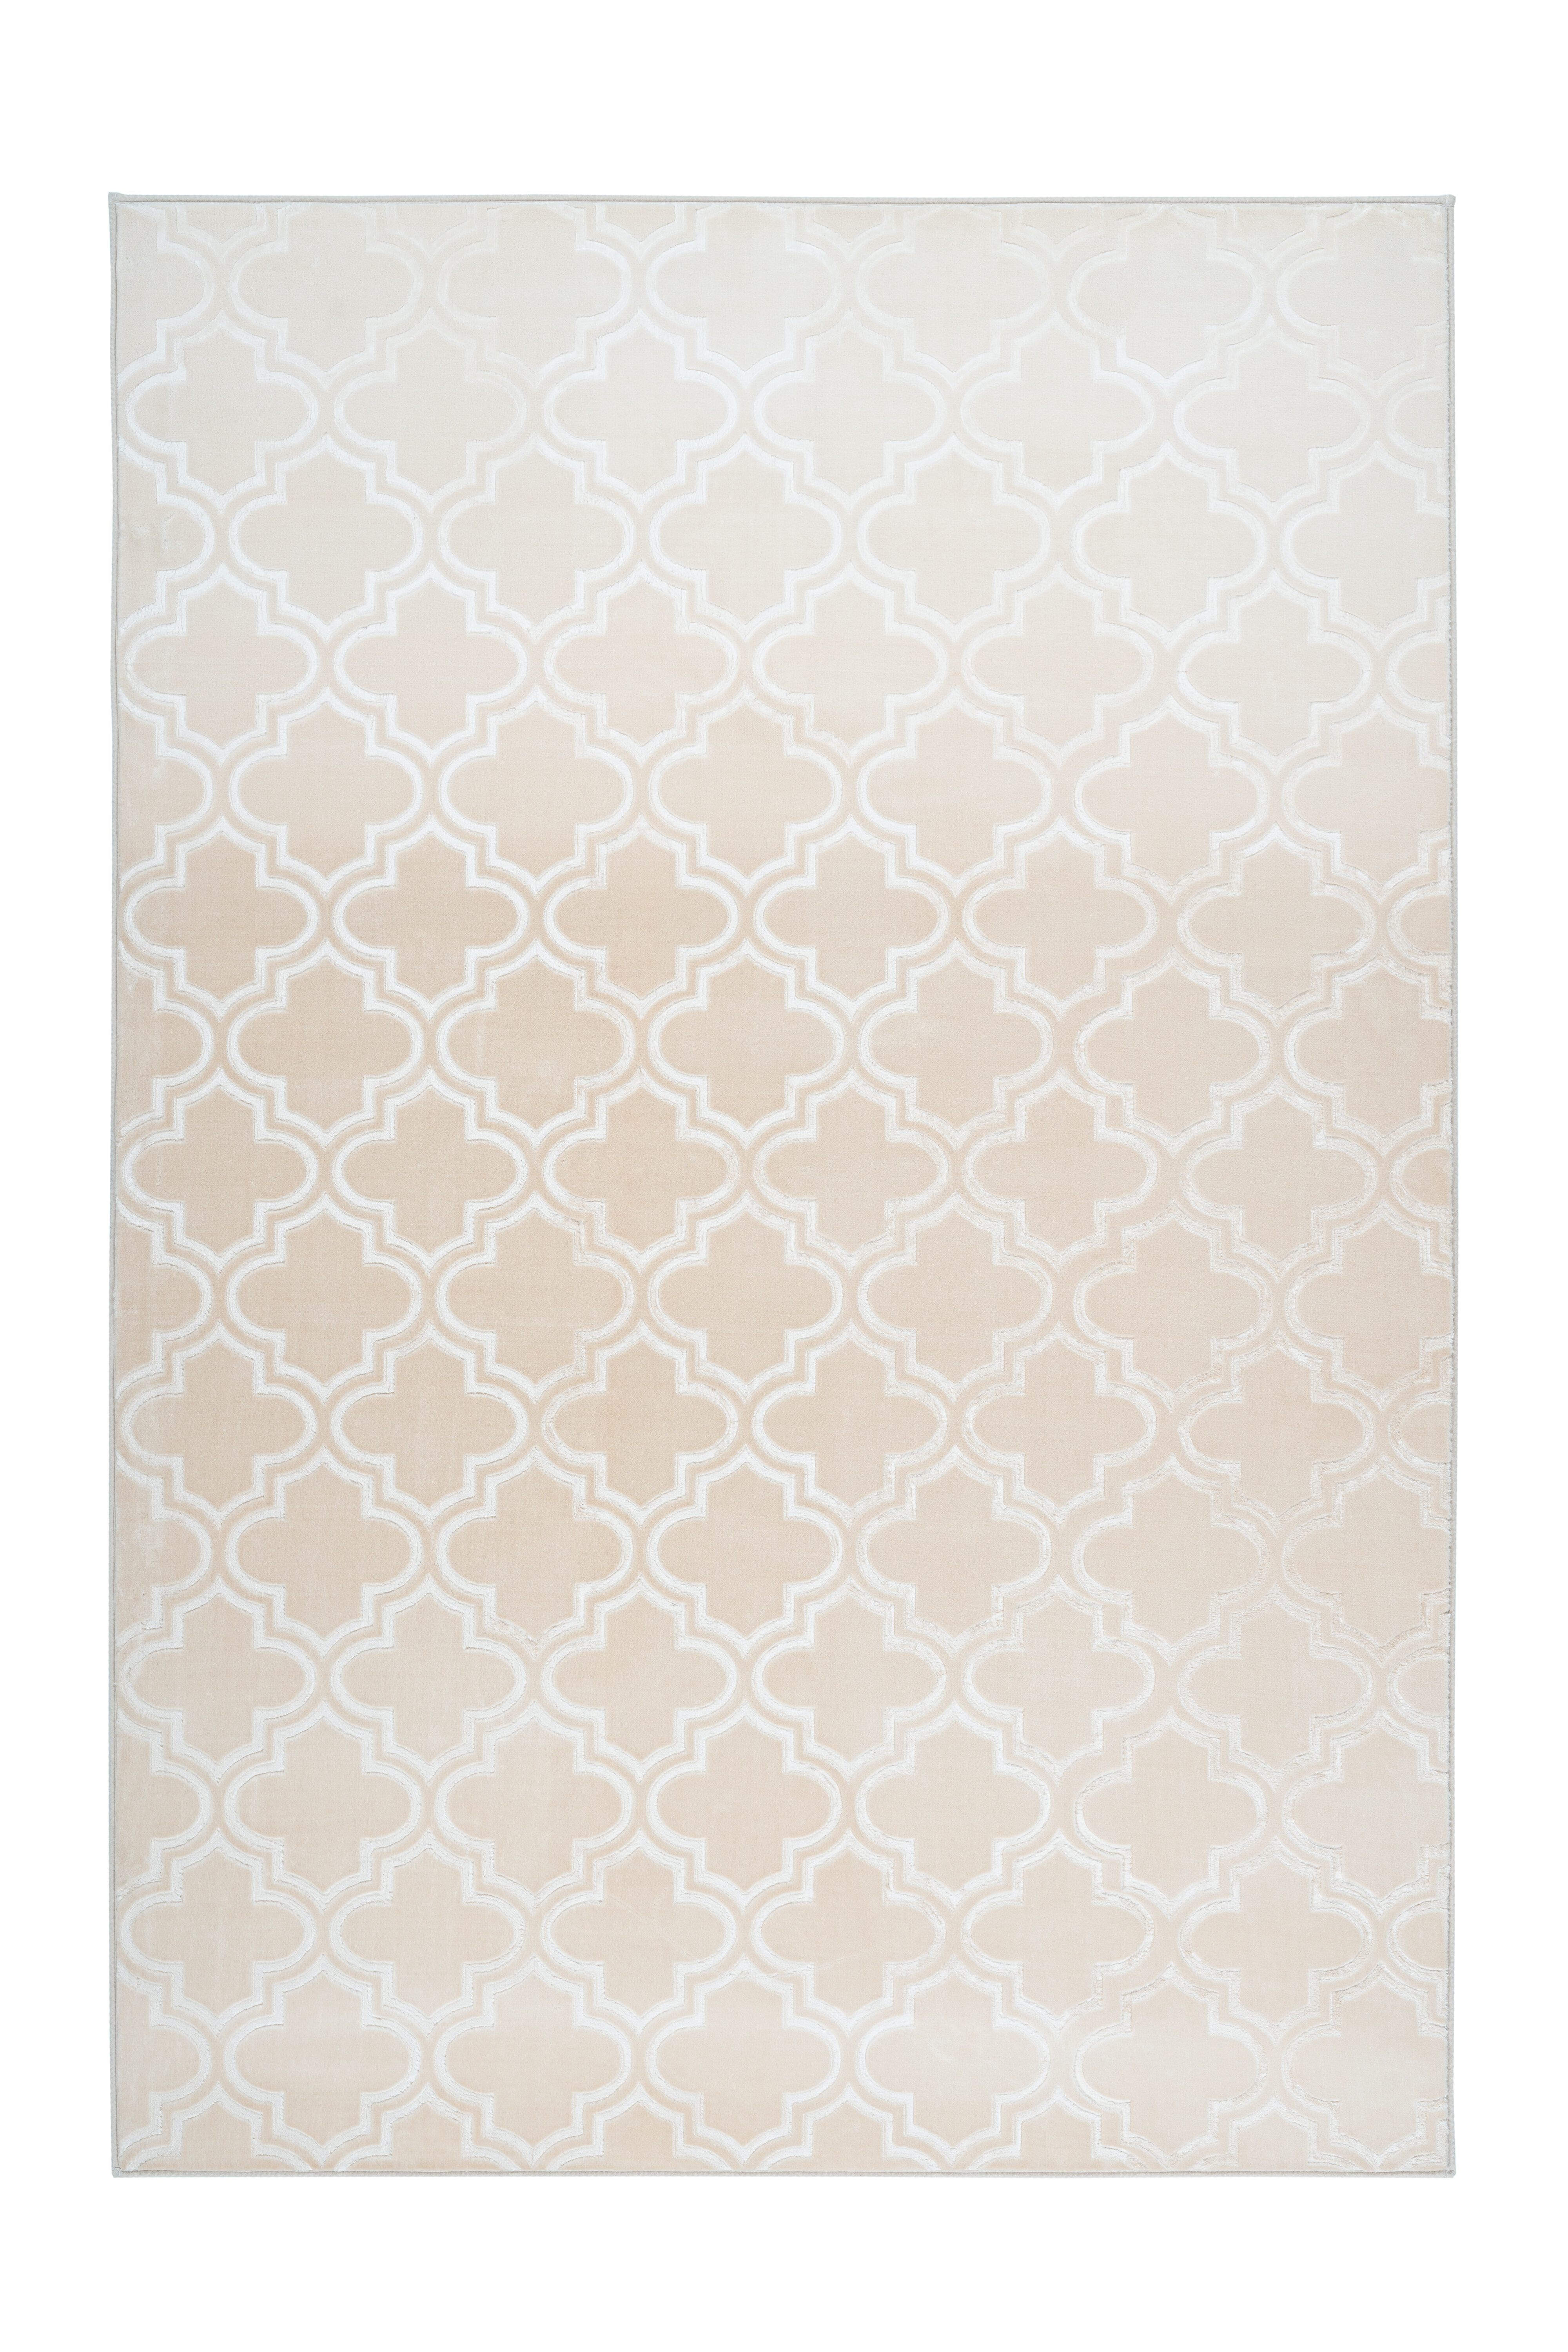 Kayoom Vloerkleed 'Monroe 100' kleur crème, 160 x 230cm